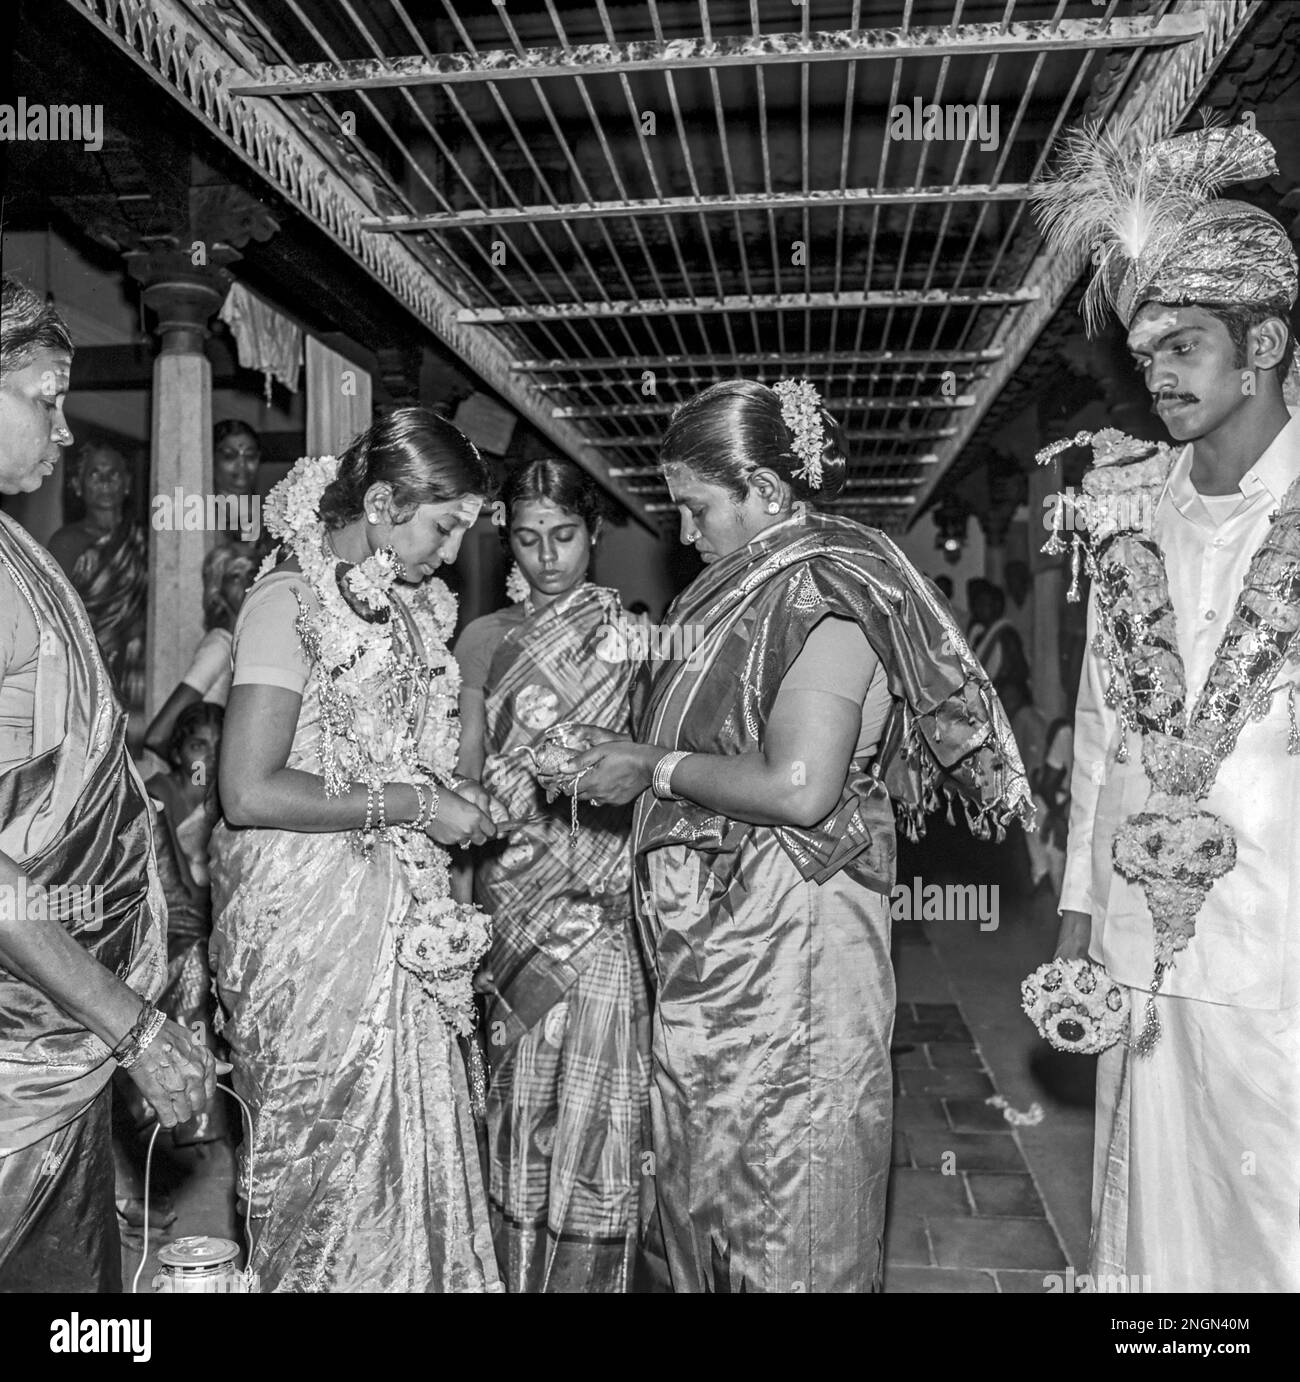 Nattukottai Chettiar o Nagarathar matrimonio, Tamil Nadu, India. Fotografato nel 1 novembre 1976 Foto Stock